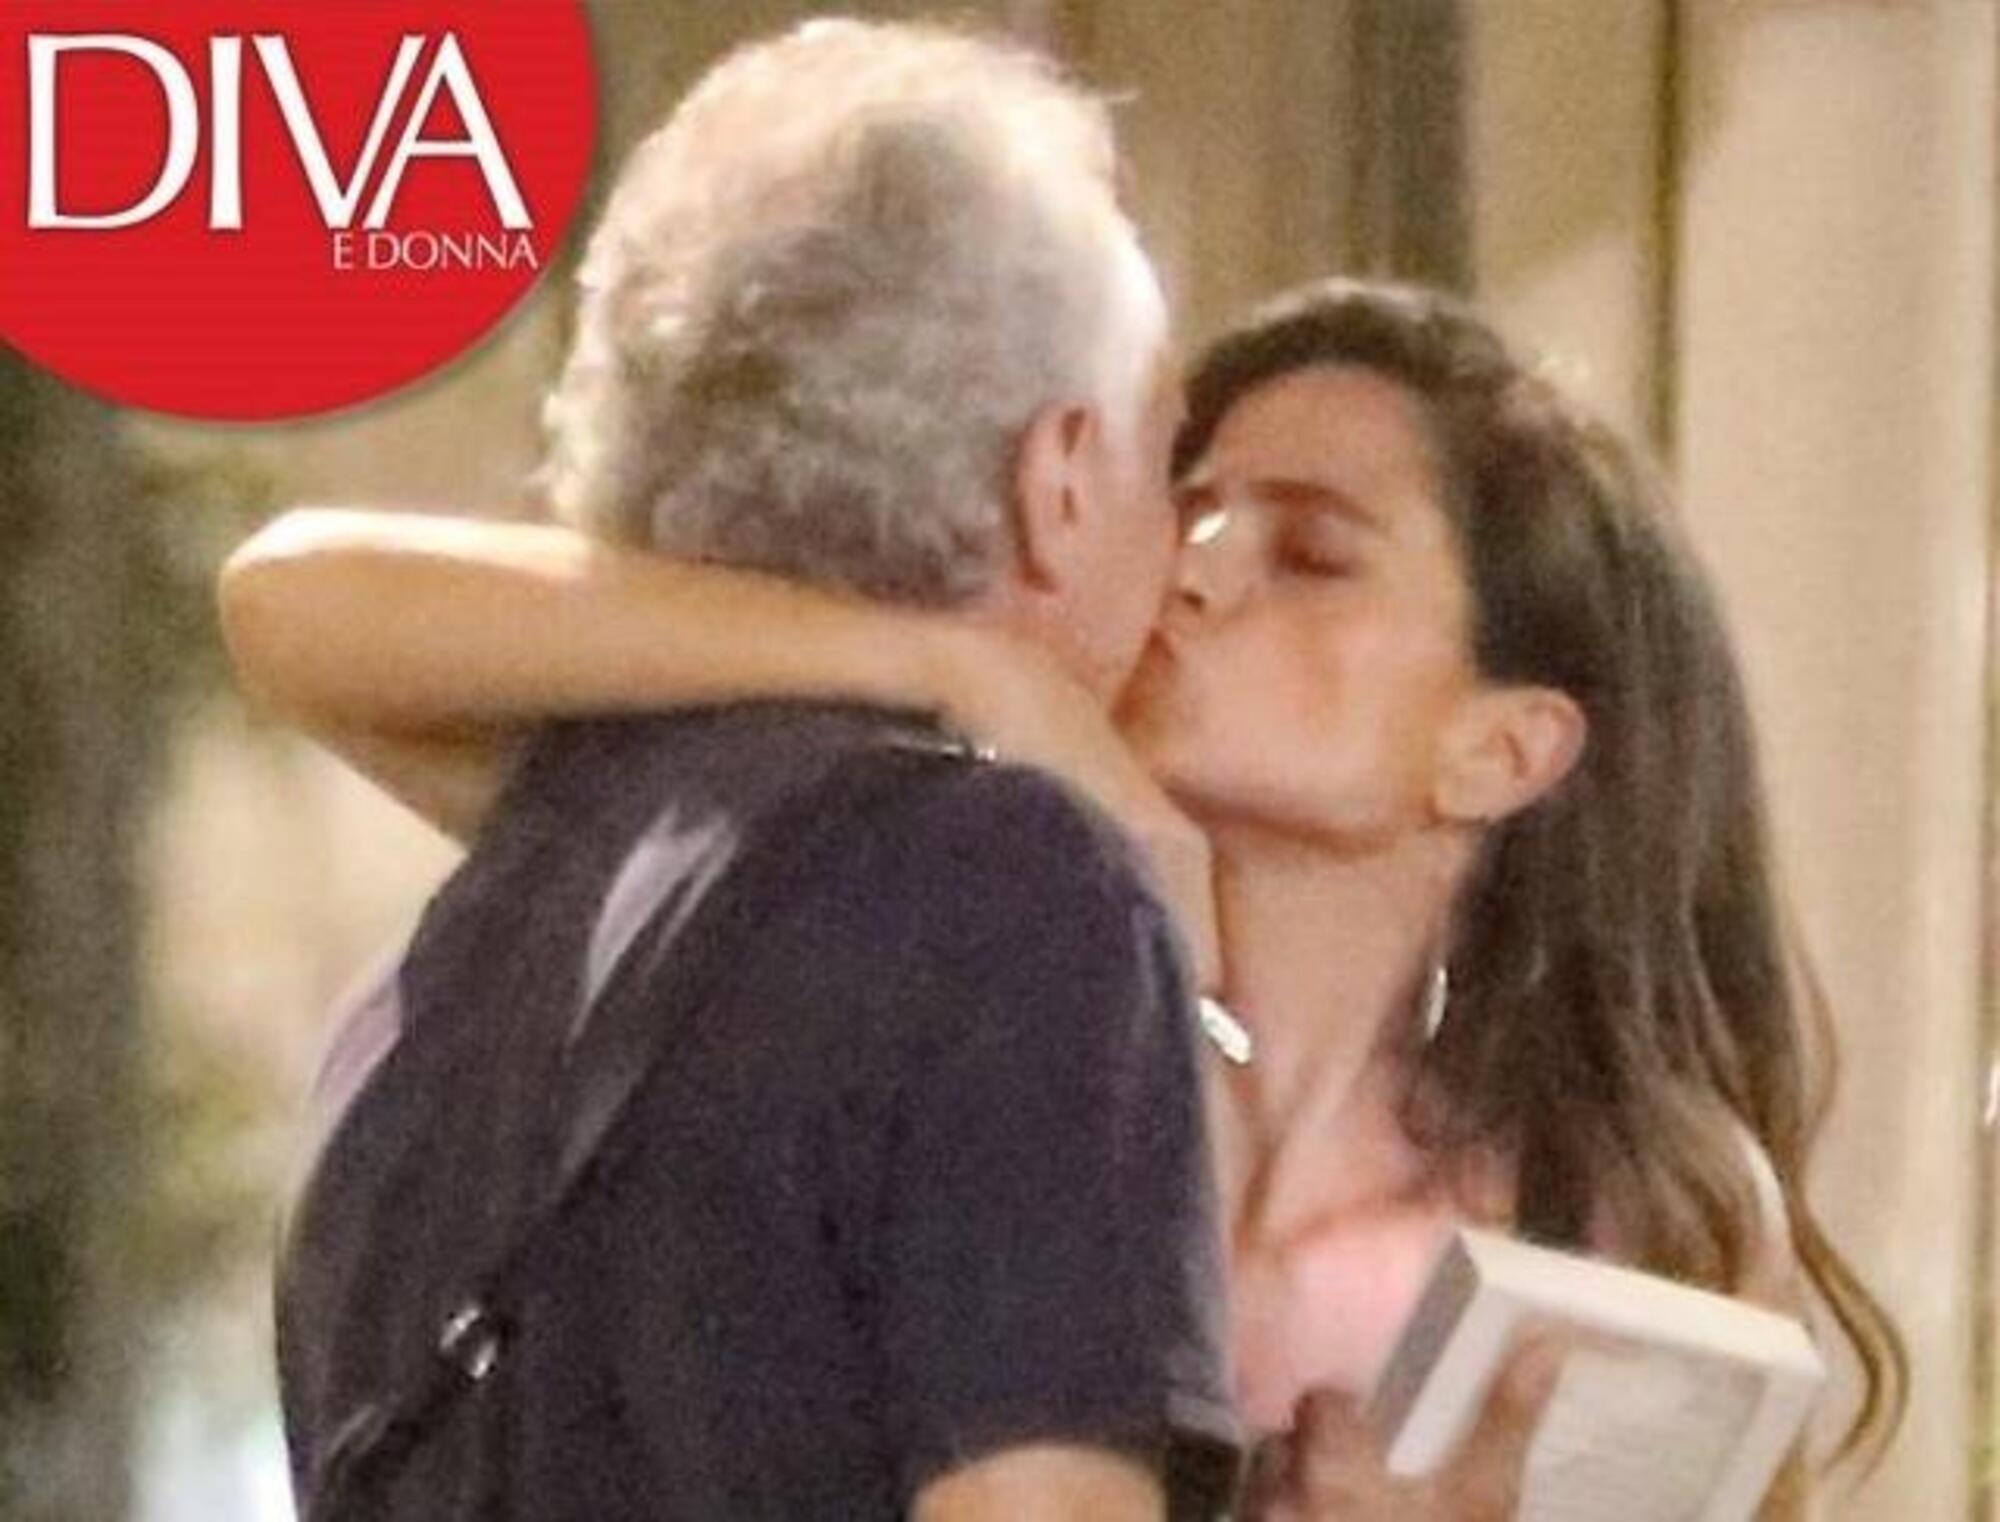 Il bacio tra Travaglio e Veronica Gentili